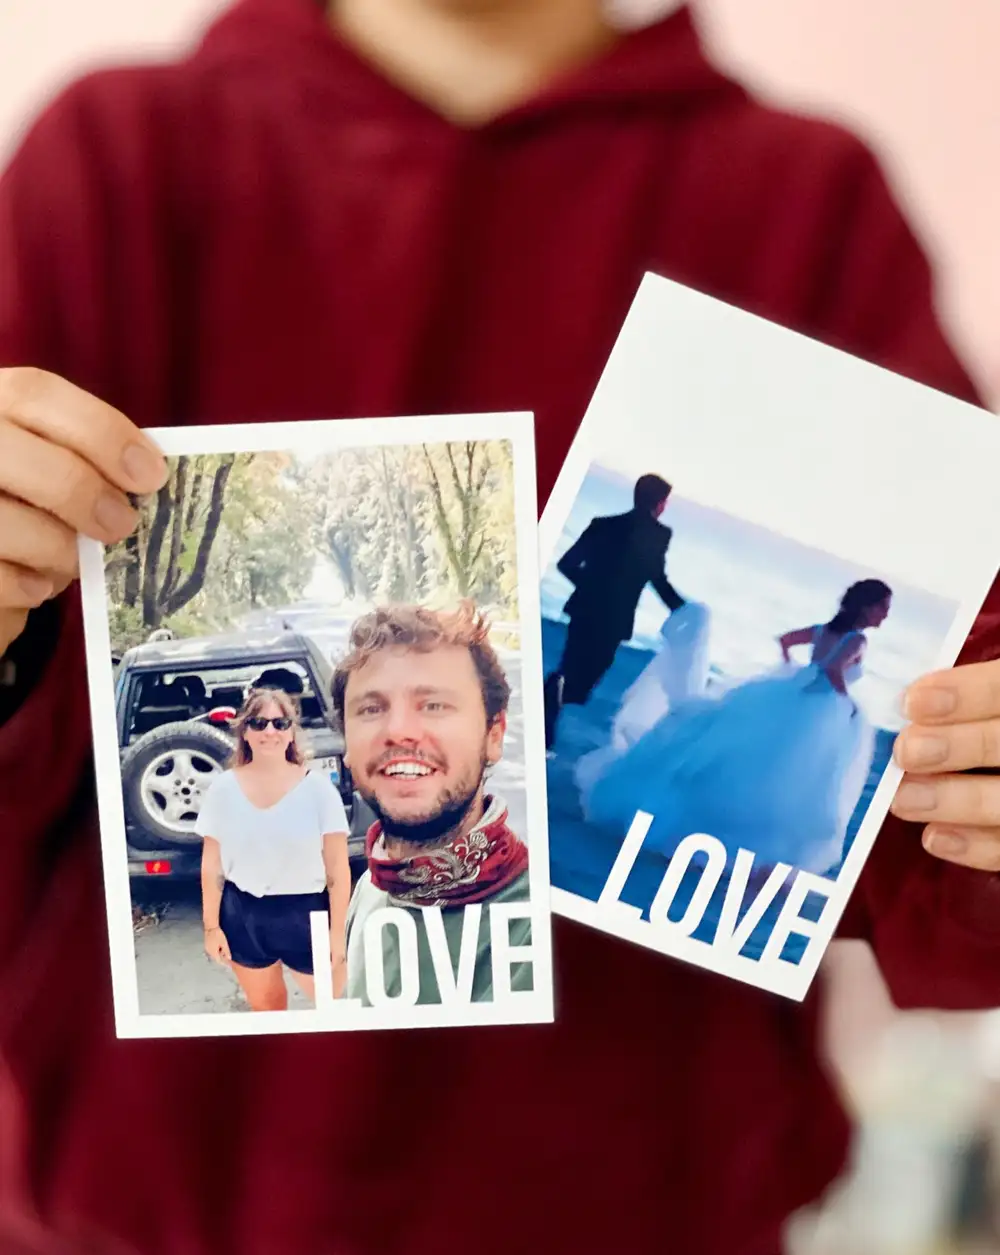 Love Aşk Mesajlı Romantik Hediye Kişiye Özel Fotoğraf Baskısı 13 x 18 cm